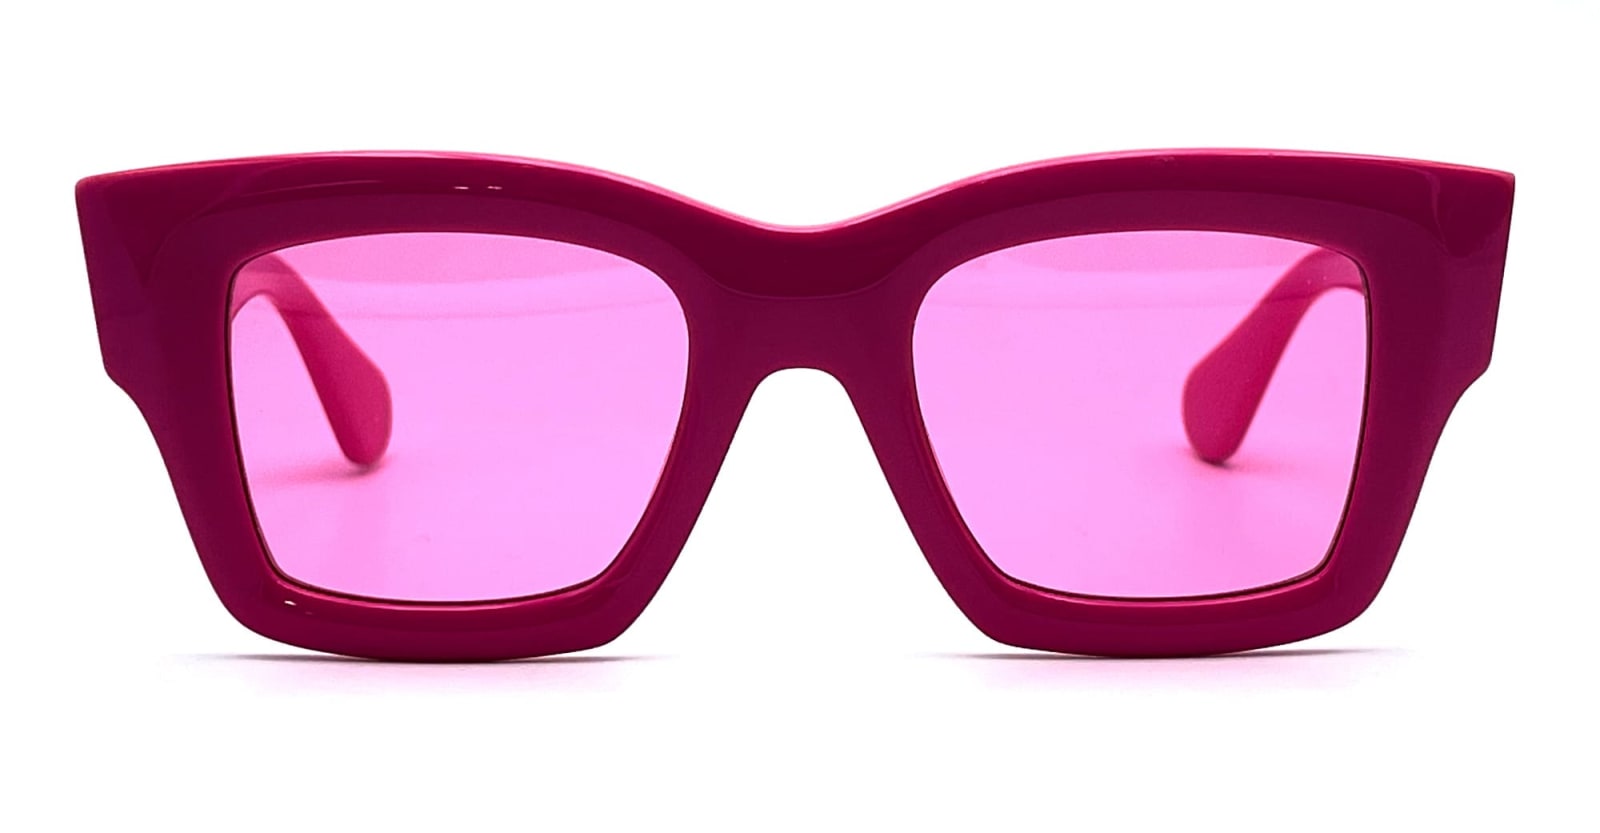 Jacquemus Les Lunettes Baci - Pink Sunglasses